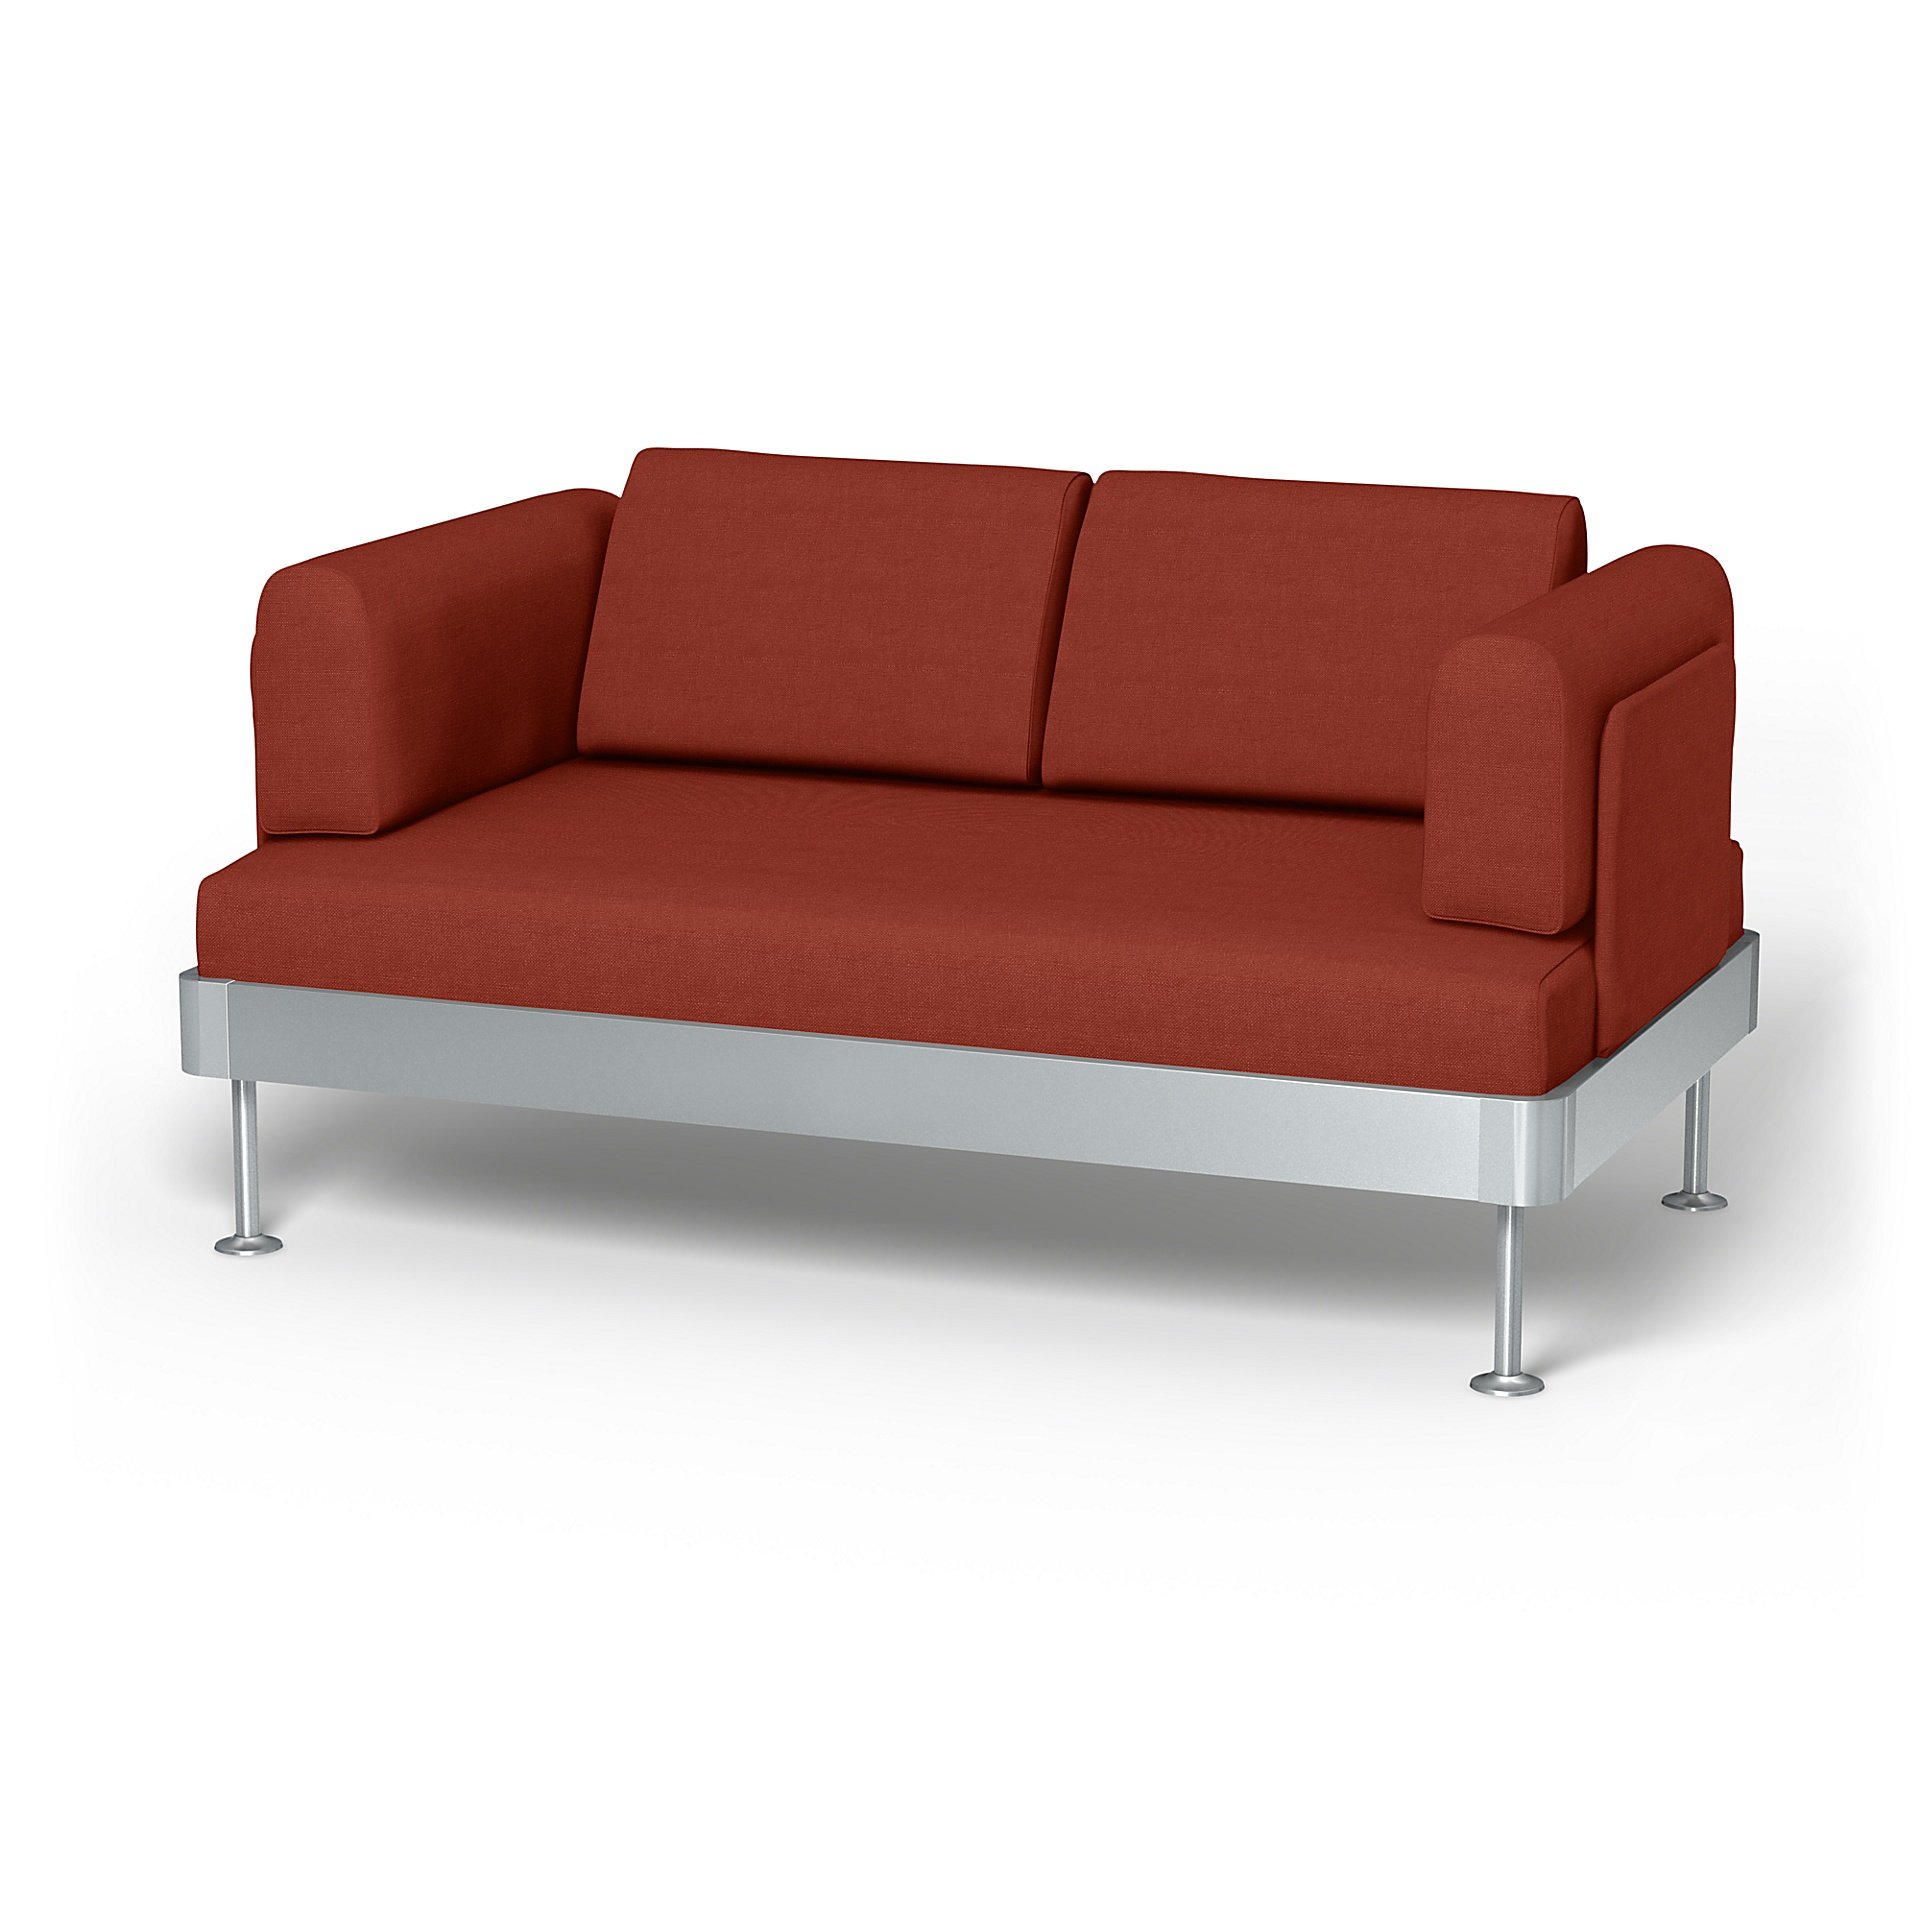 IKEA - Delaktig 2 Seater Sofa Cover, Cayenne, Linen - Bemz